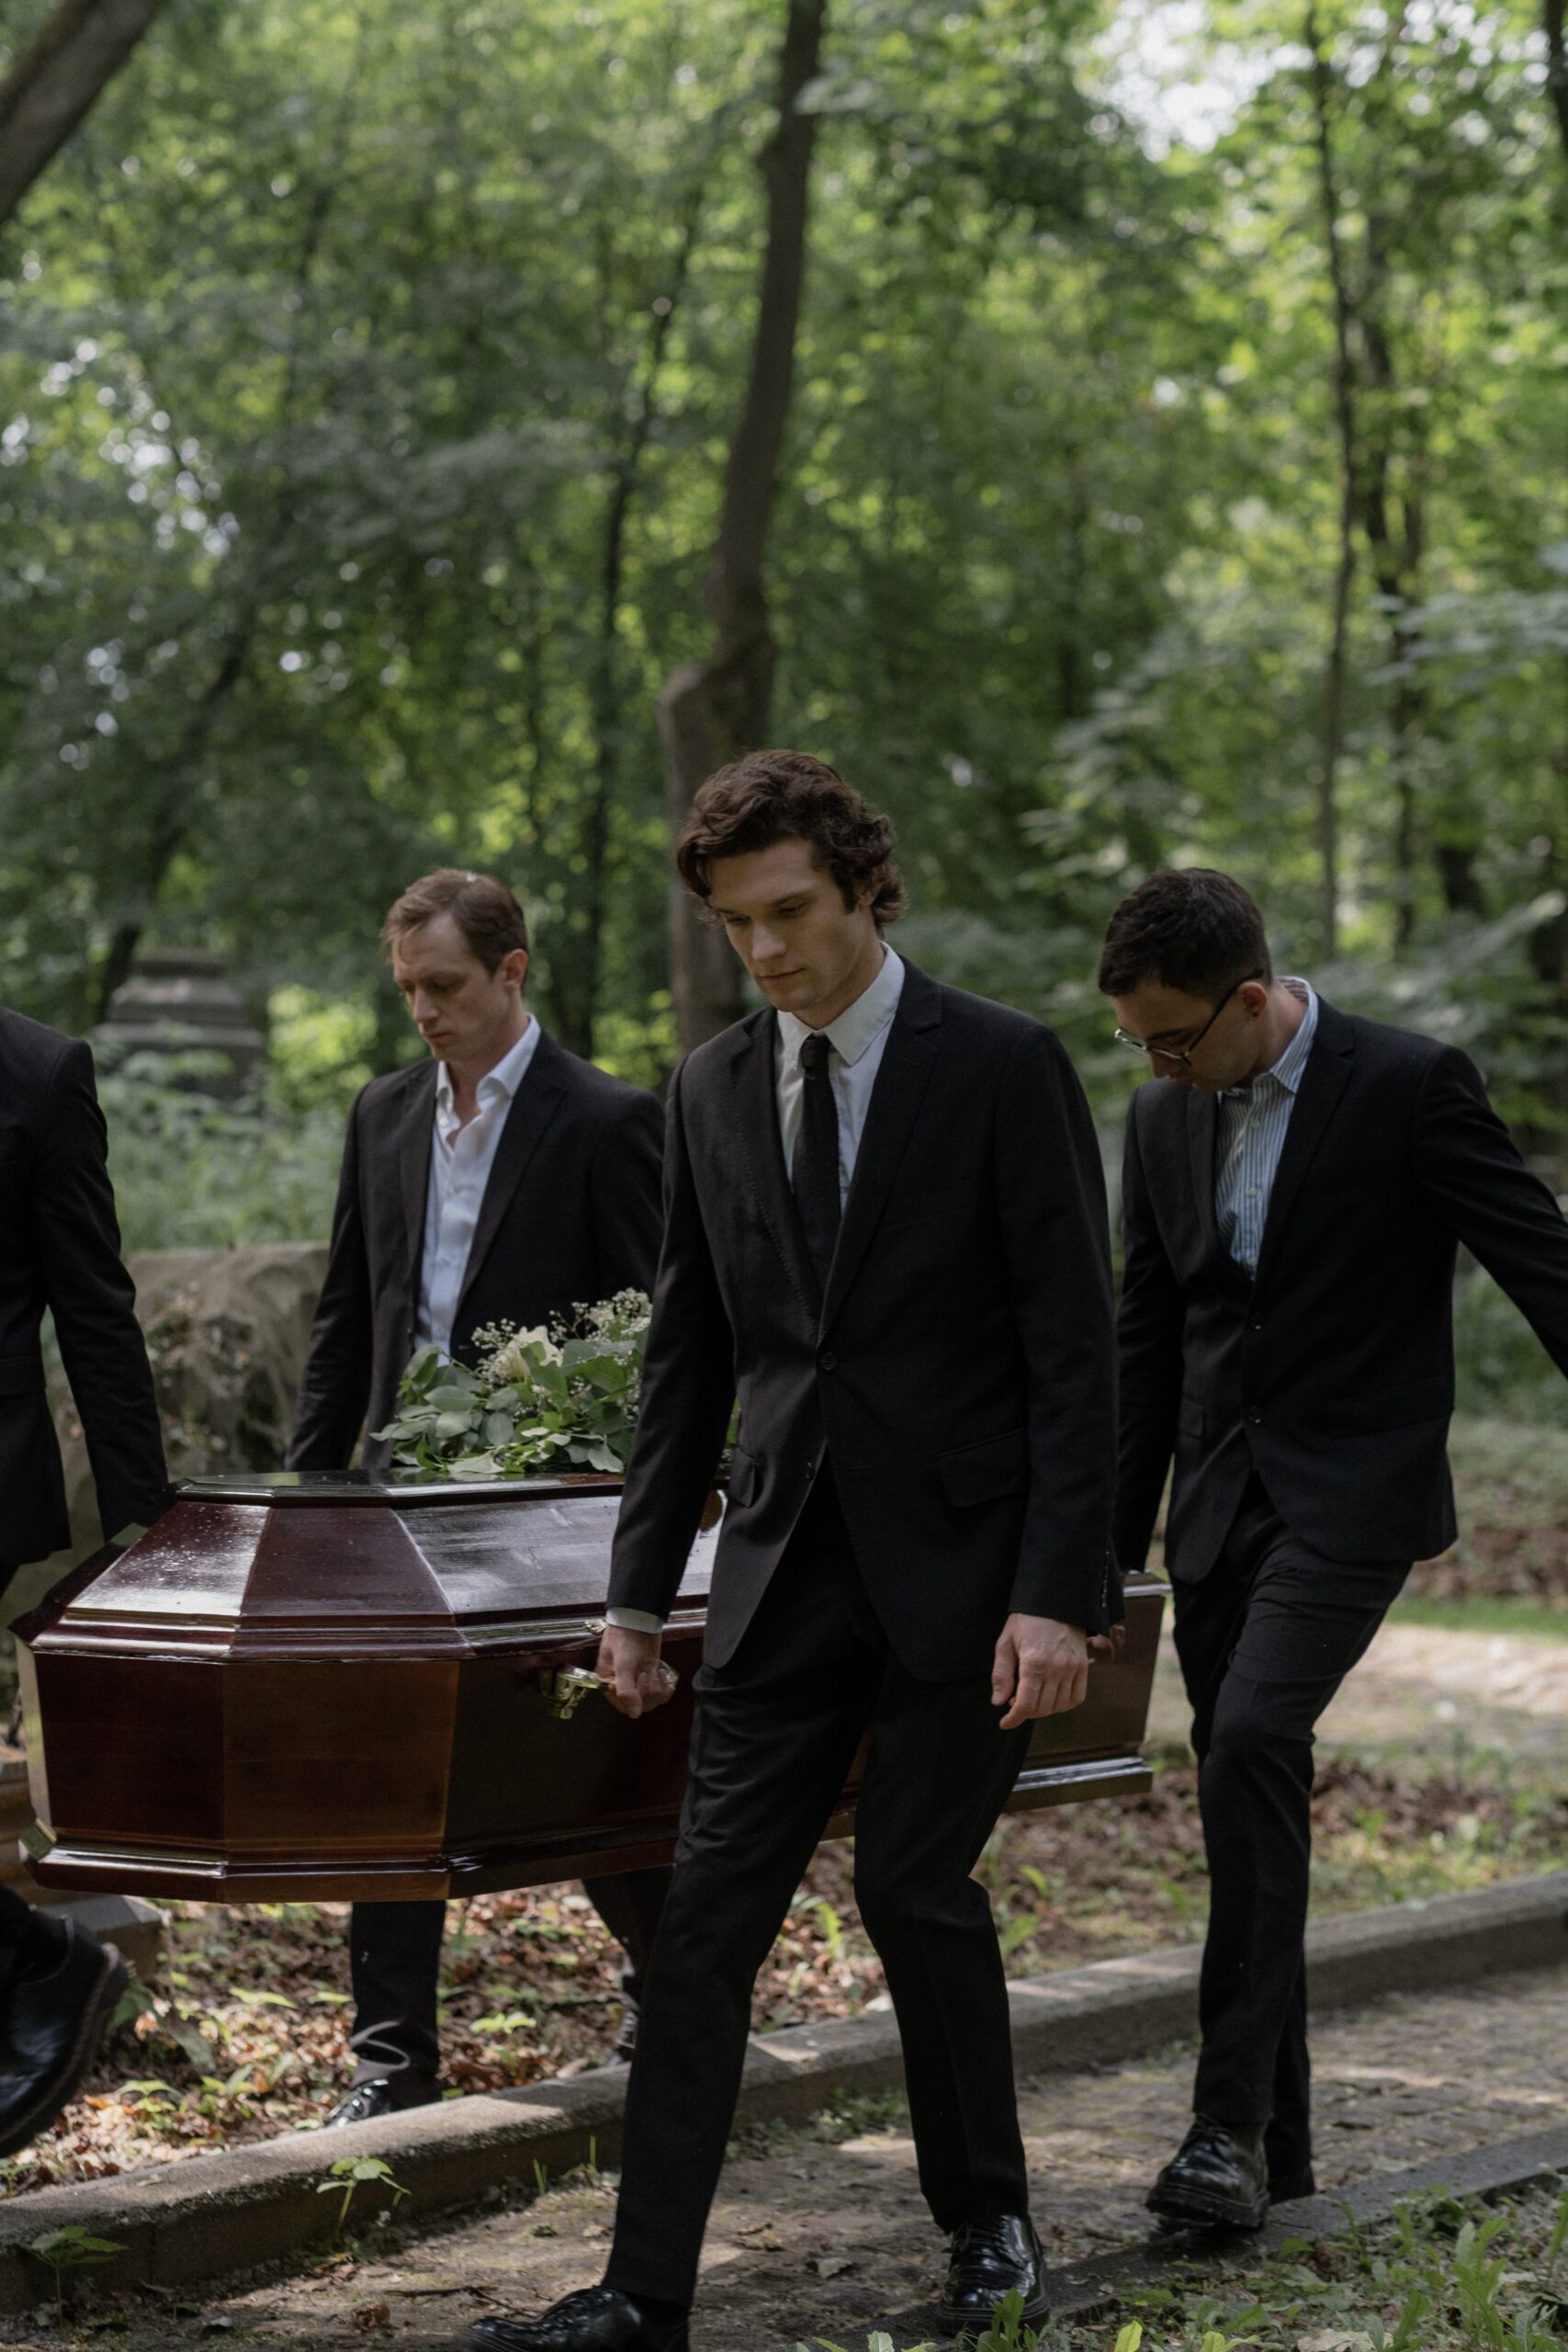 Four men carrying a casket image